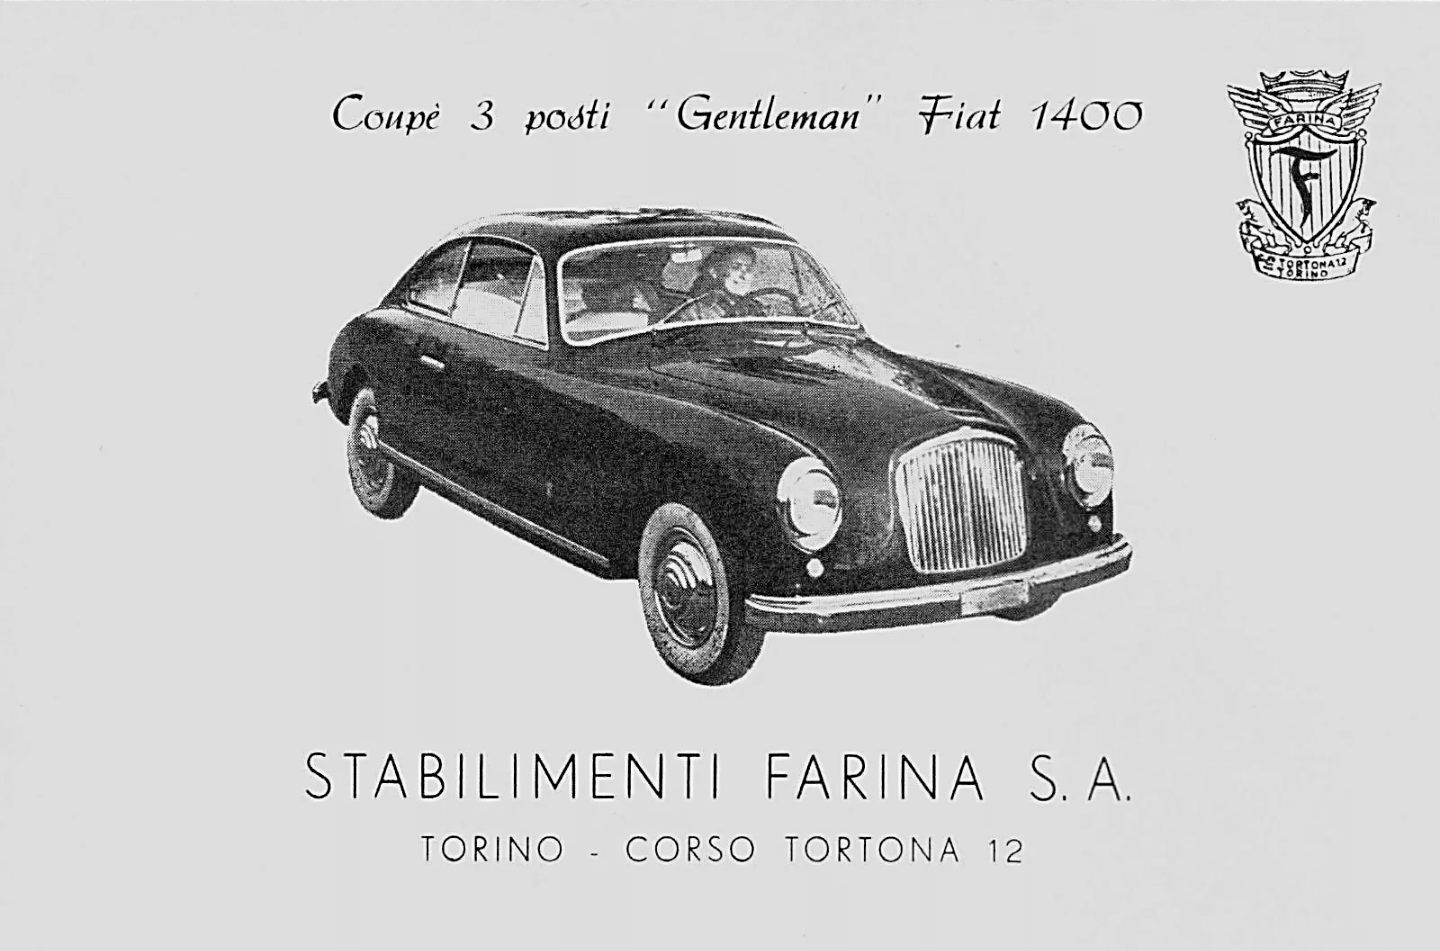 Fiat 1400 Gentleman